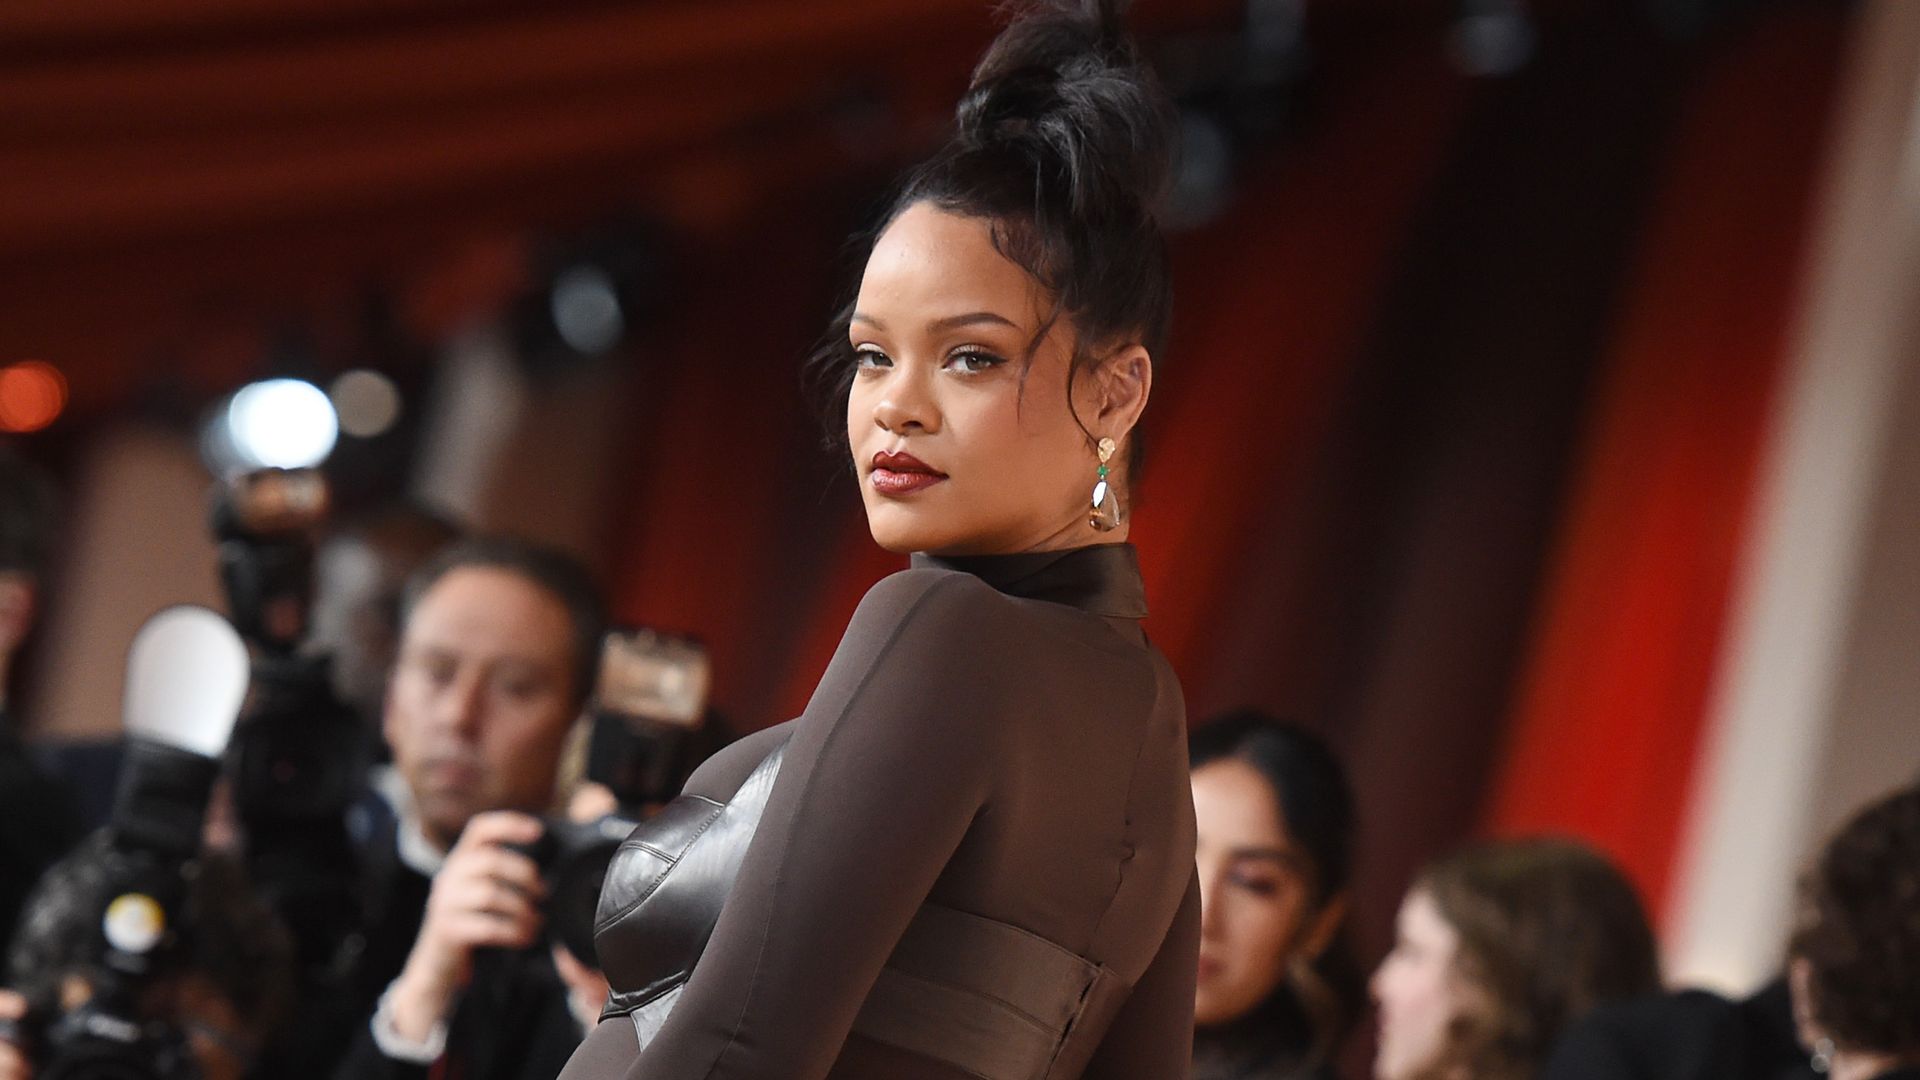 Rihanna Just Wore a $670,000 Watch Around Her Neck